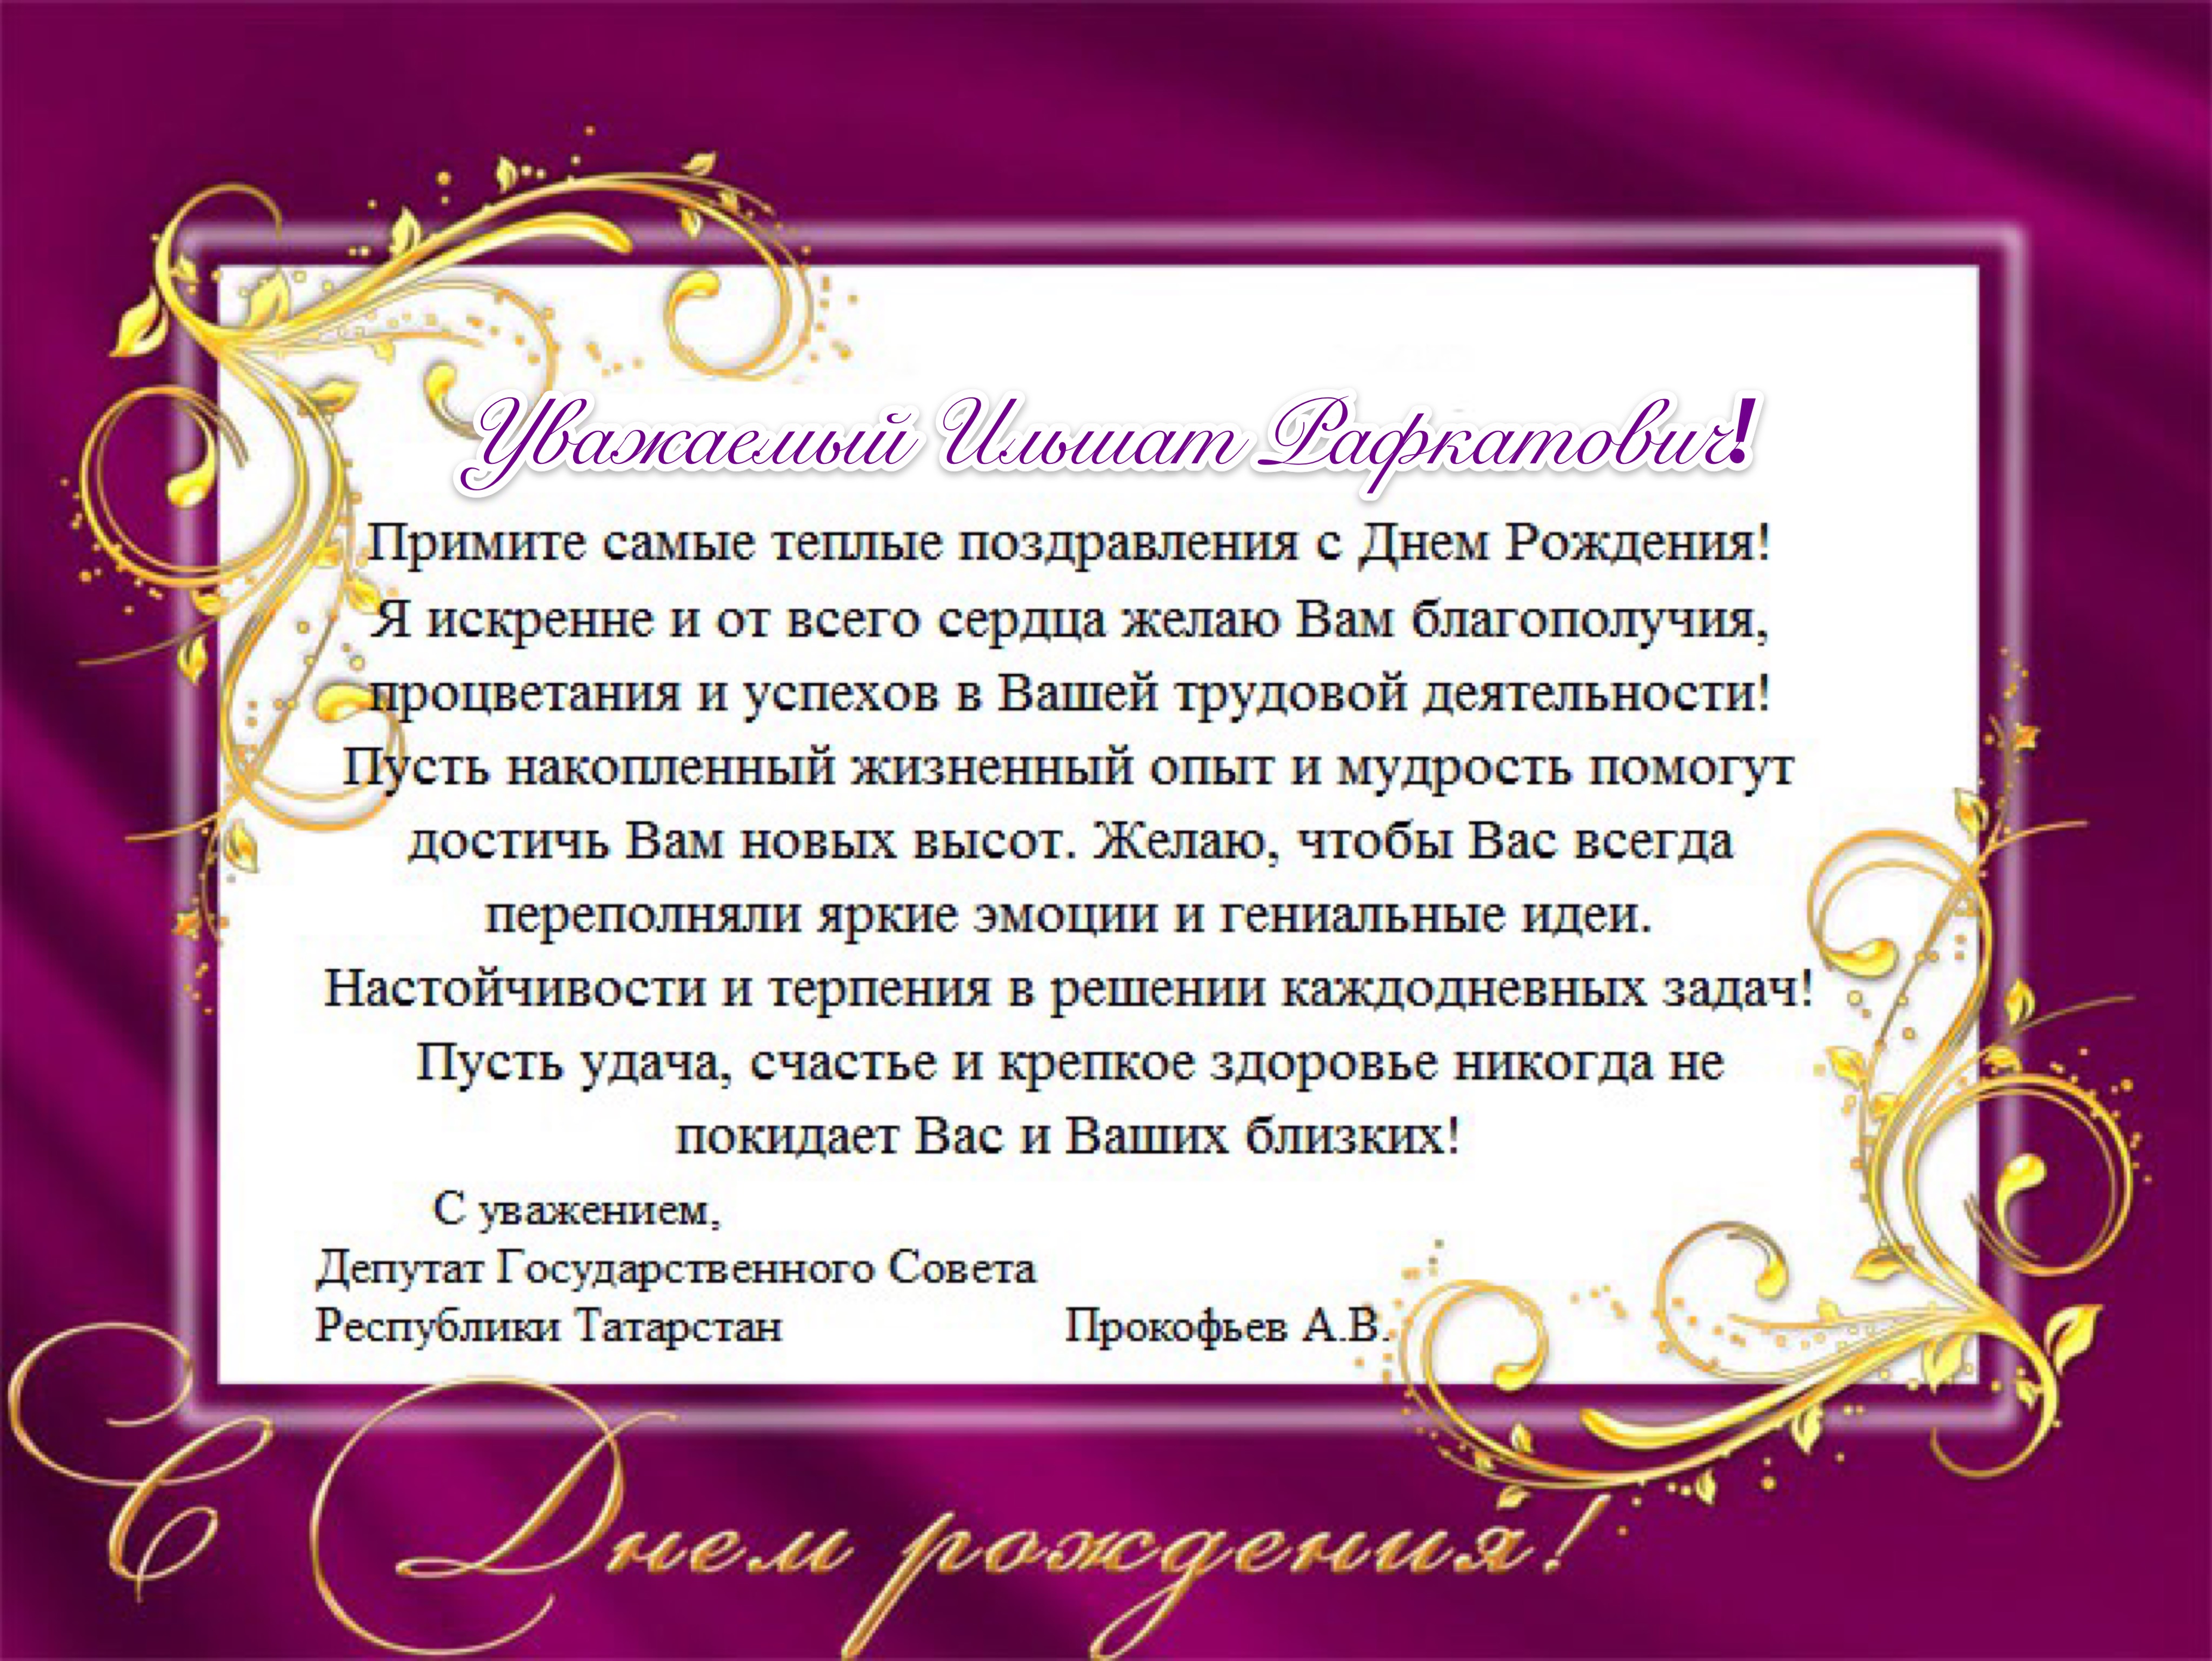 Др уважаемый. Официальное поздравление с днем рождения. Официальная открытка с днем рождения. Поздравления с днём рождения Дмитрия. Поздравление руководителю.